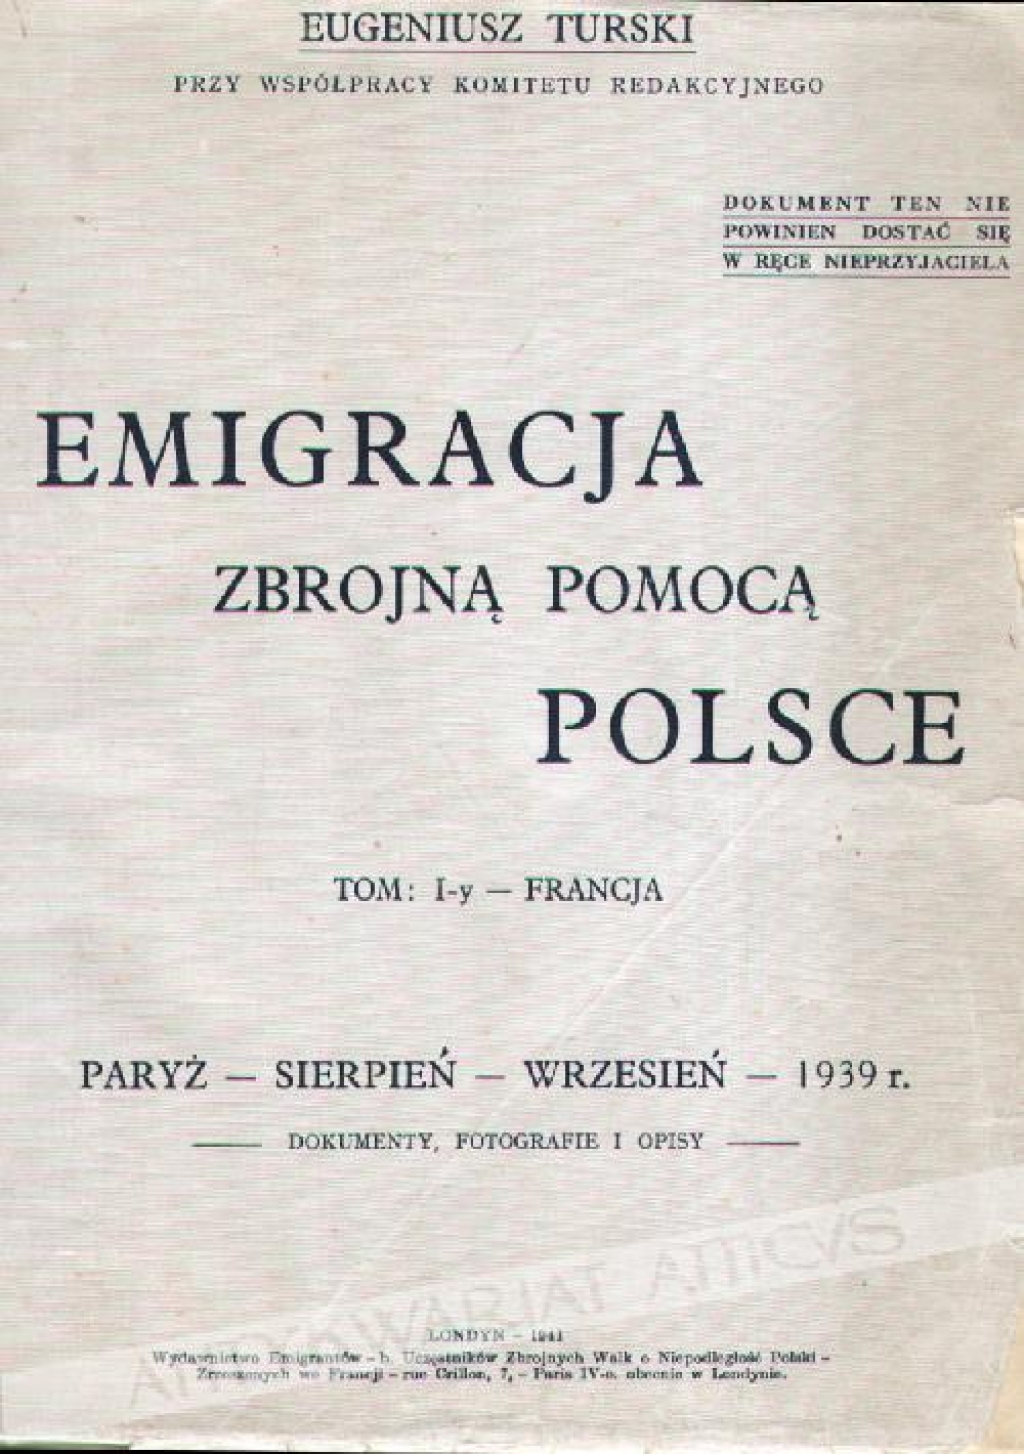 Emigracja zbrojną pomocą Polsce, Tom I-y - FrancjaParyż - sierpień - wrzesień - 1939 r.Dokumenty, fotografie i opisy